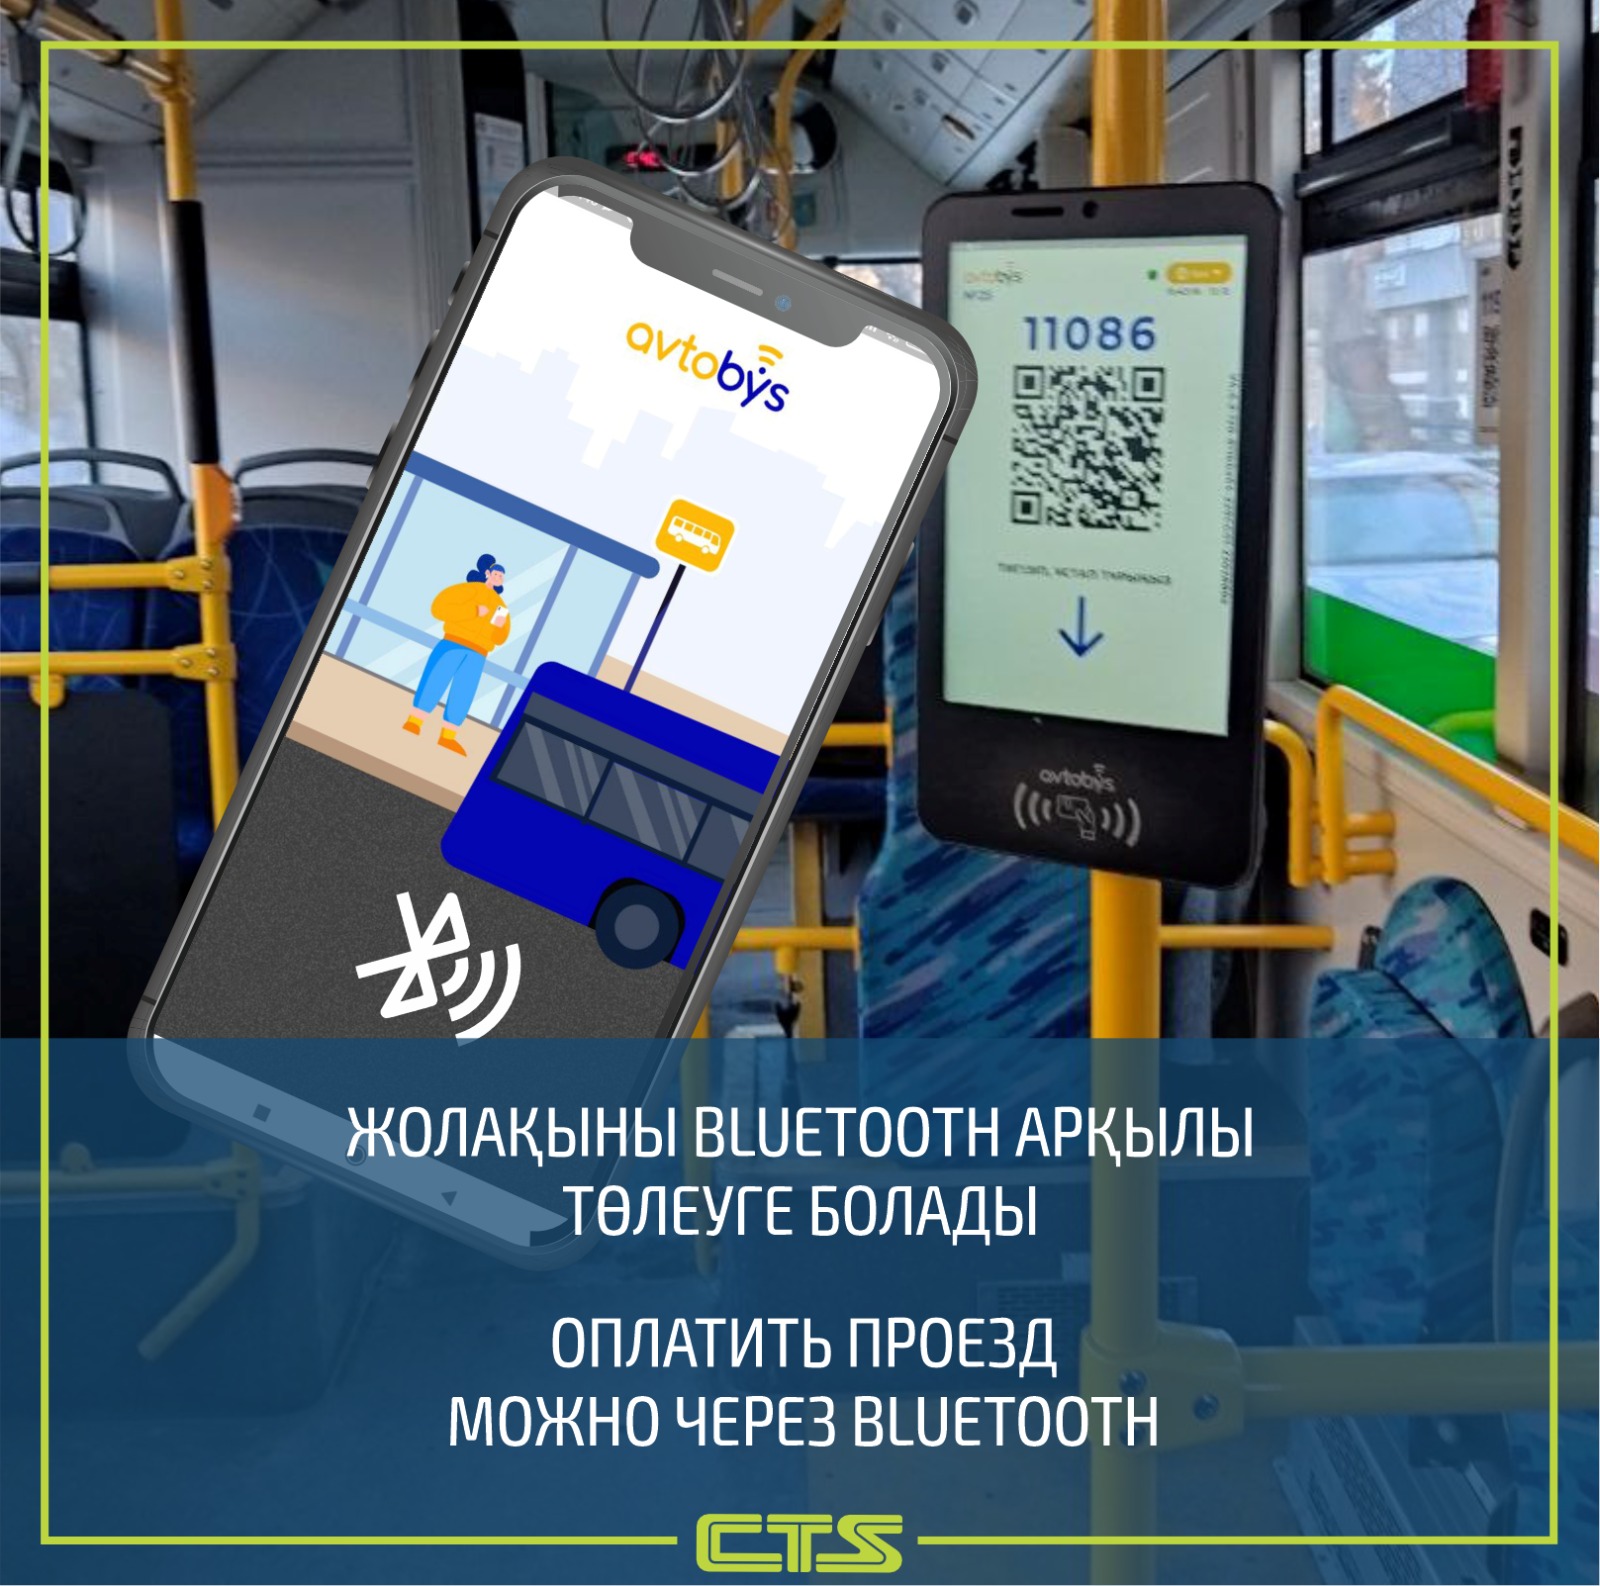 Оплатить проезд в общественном транспорте столицы можно через Bluetooth